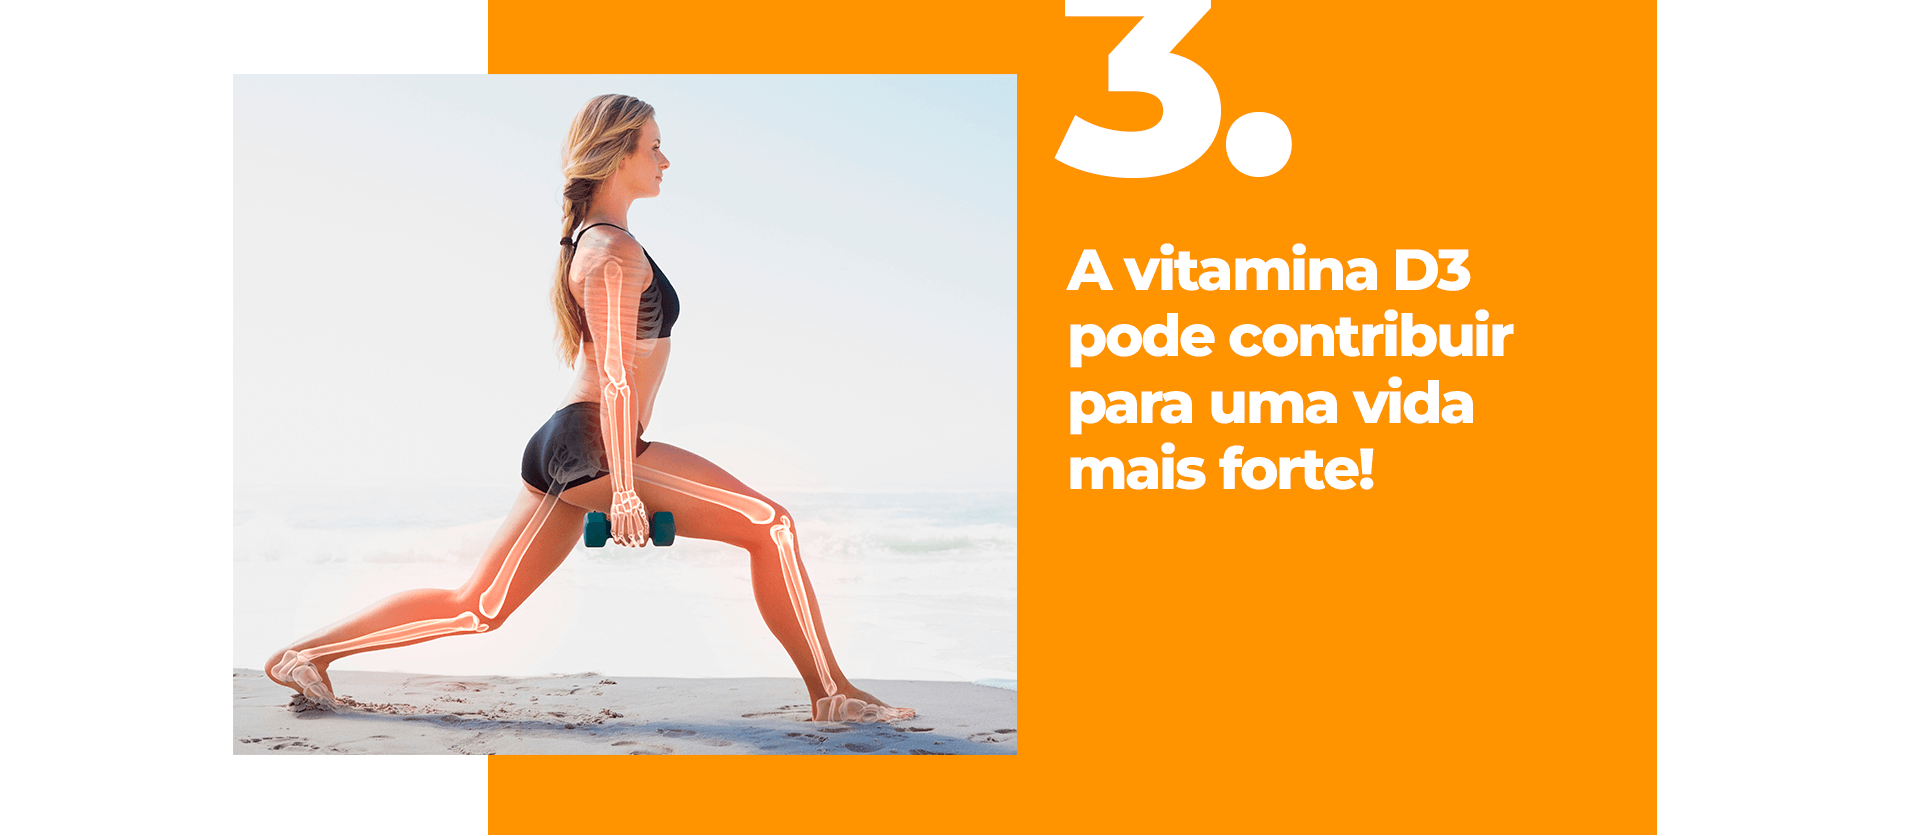 A vitamina D3 pode contribuir para uma vida mais forte!